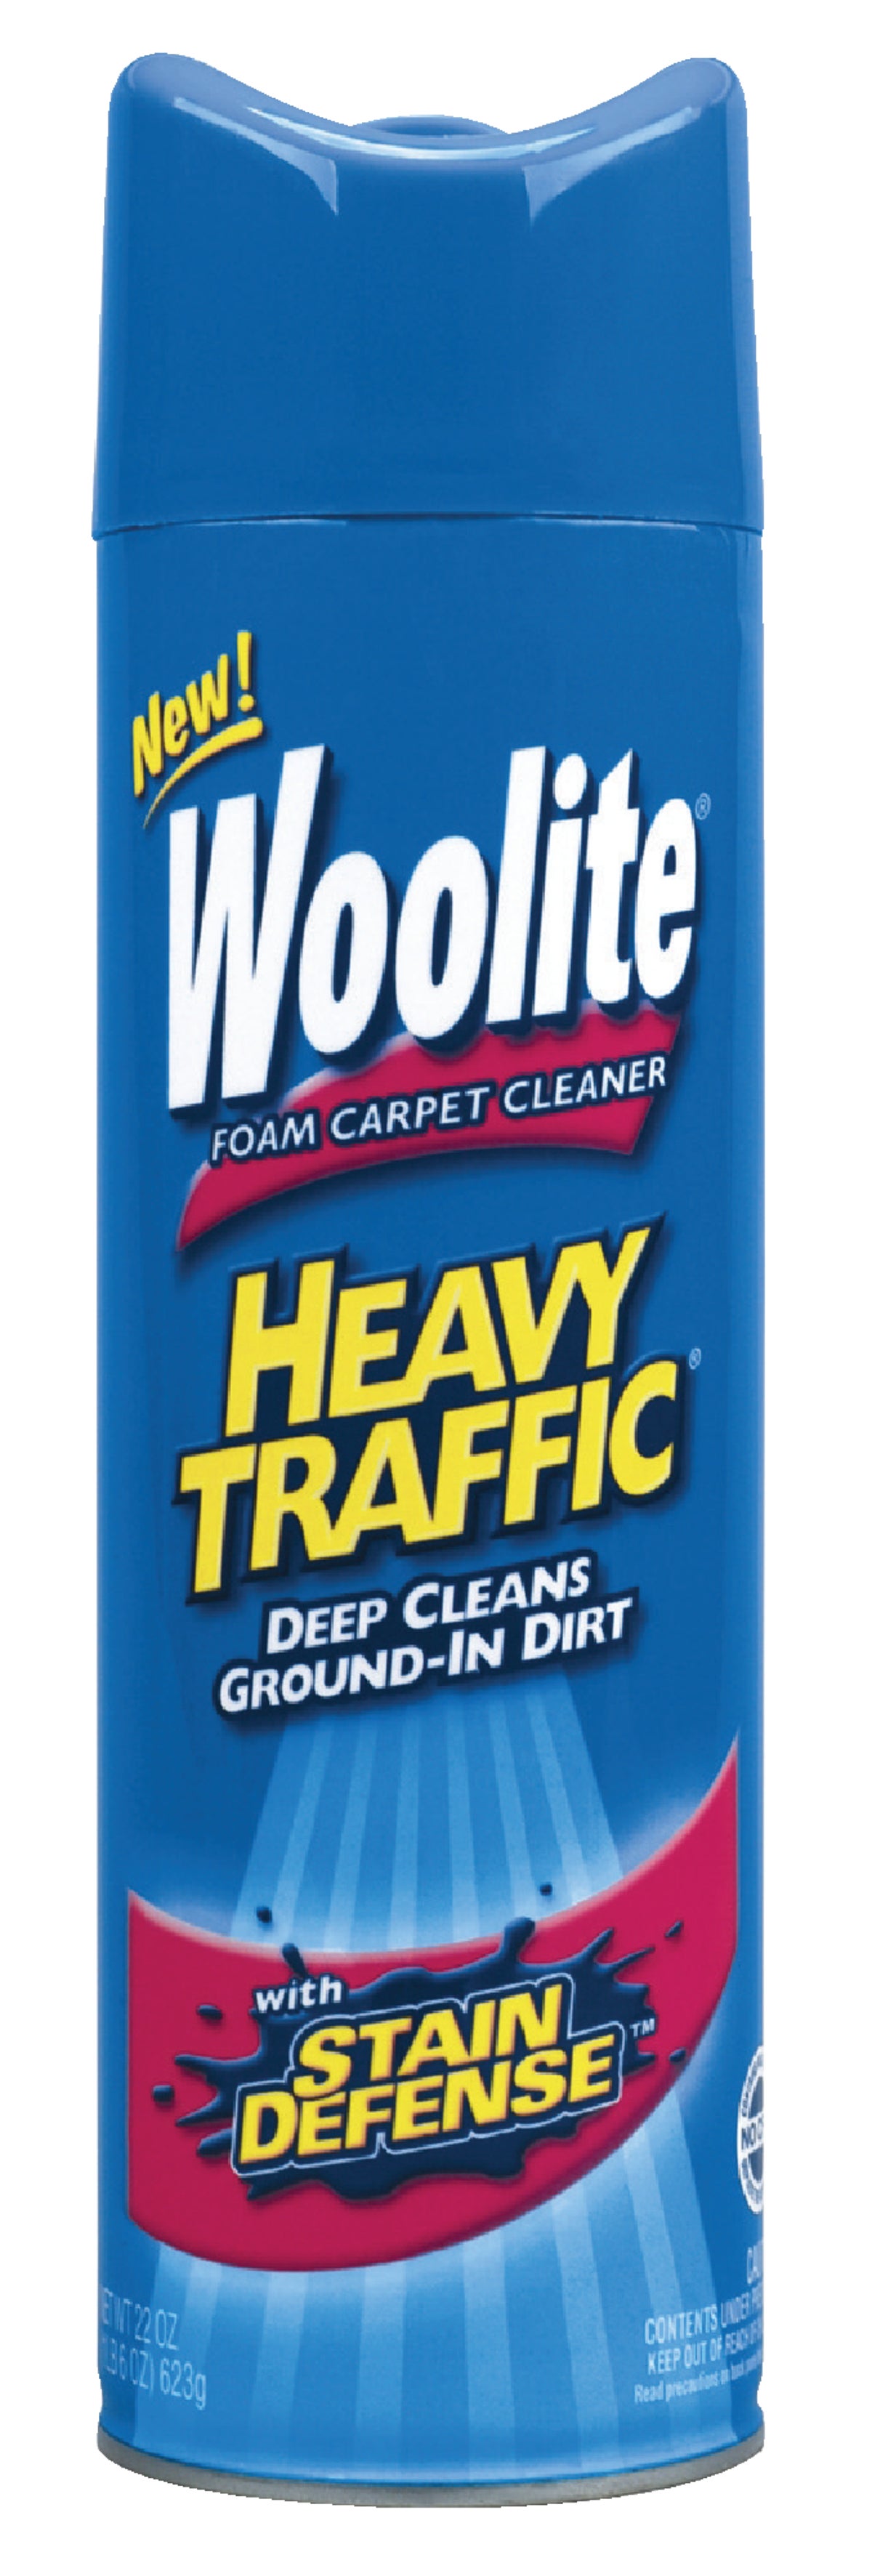 Buy Woolite Foam Carpet Cleaner 22 Oz.